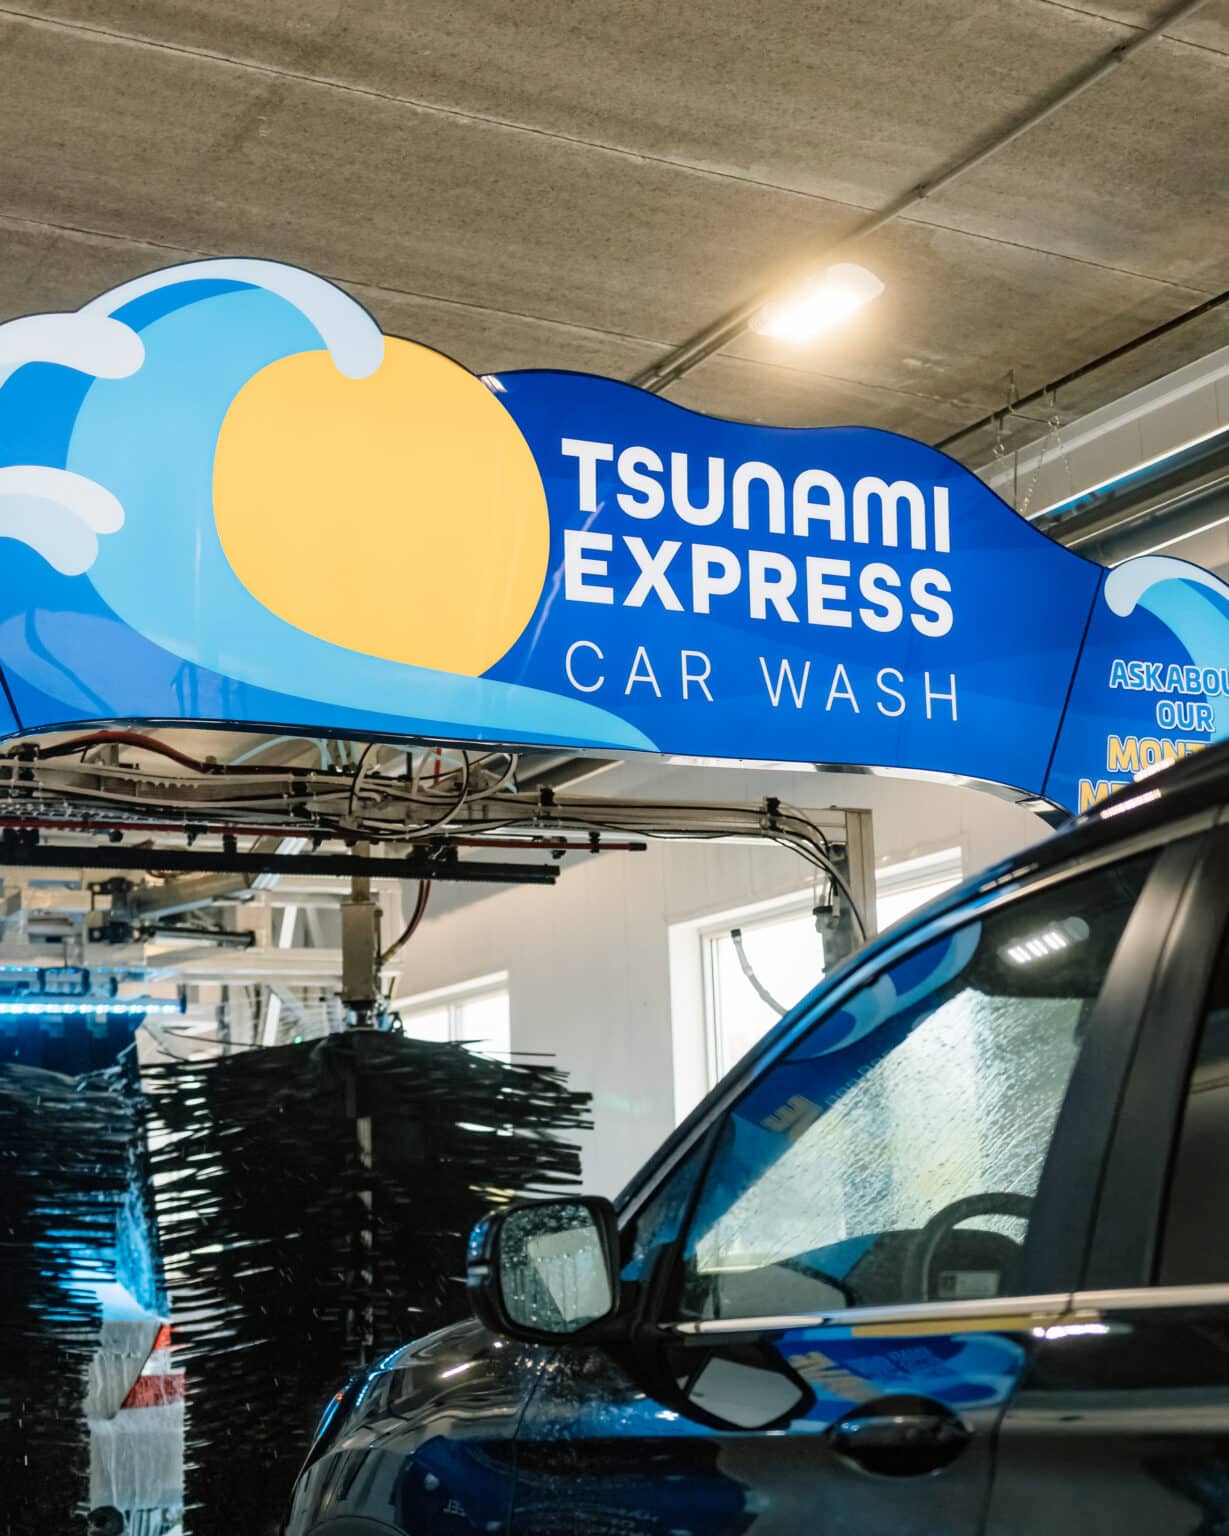 Tsunami Express Car Wash Tunnel